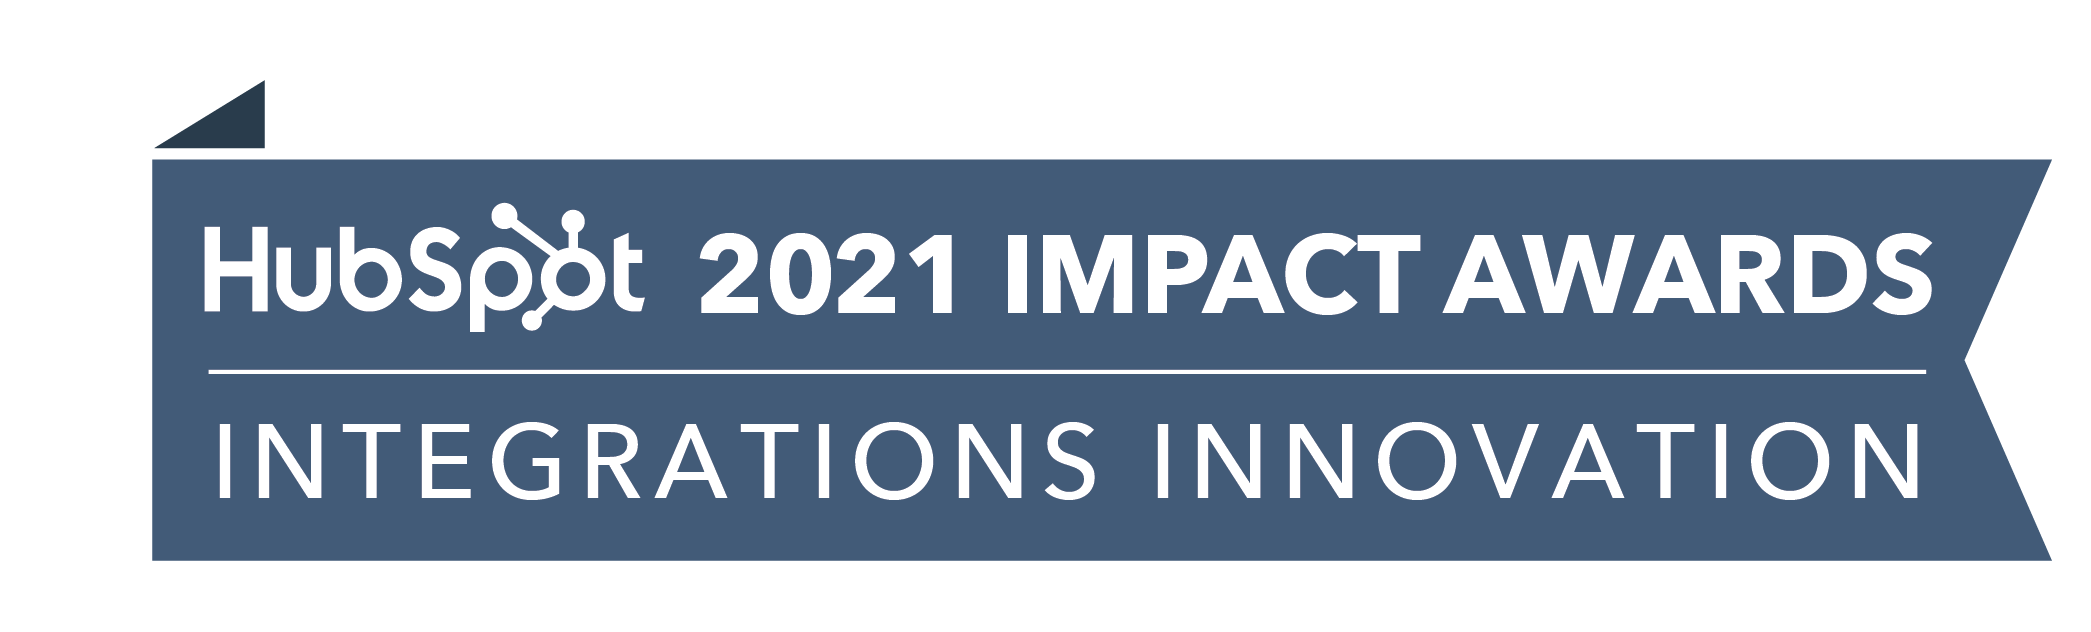 HubSpot_ImpactAwards_2021_IntegrationsInnov2-3